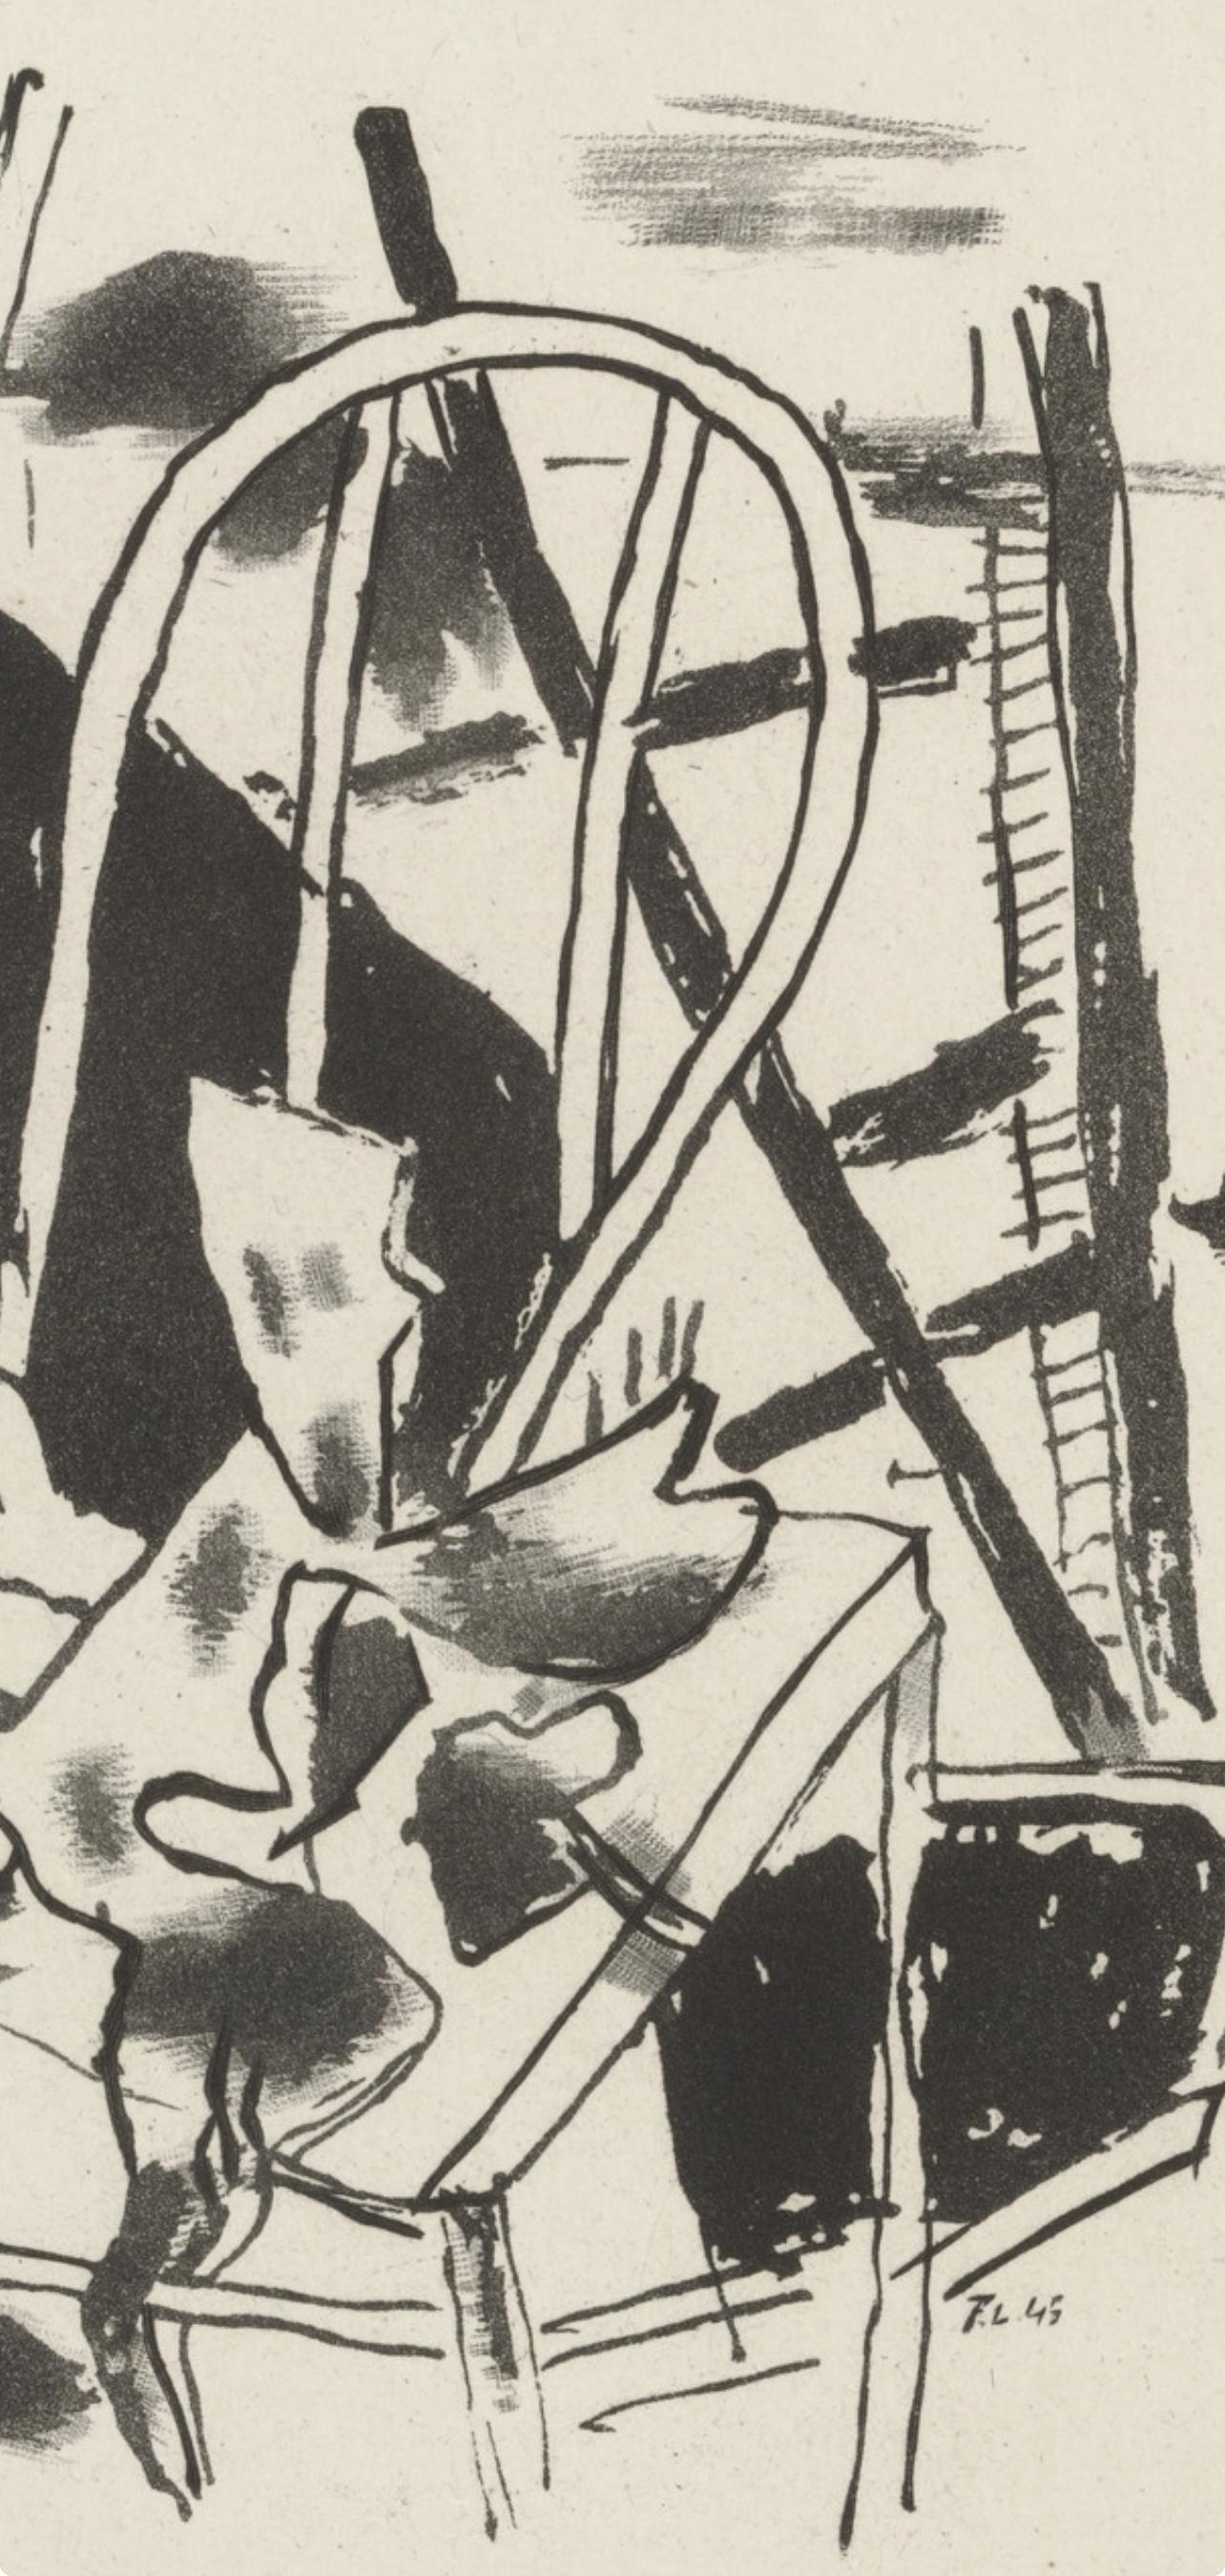 Léger, Composition, Du cubisme (d'après) - Print de Fernand Léger